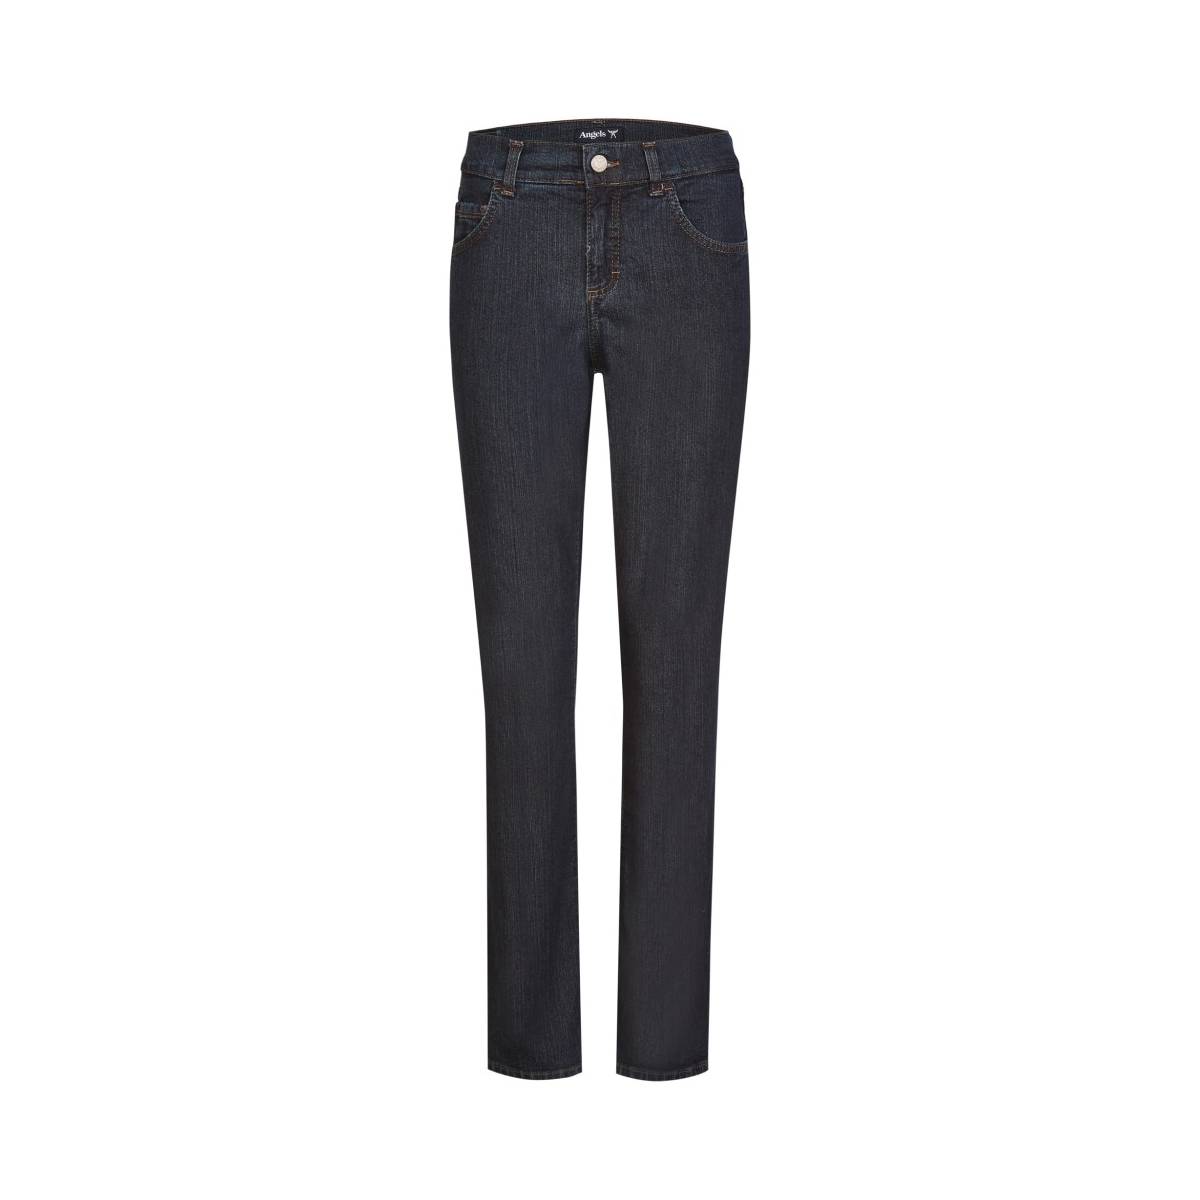 ANGELS  broeken donkere jeans -  model dolly/538032 - Dameskleding broeken jeans